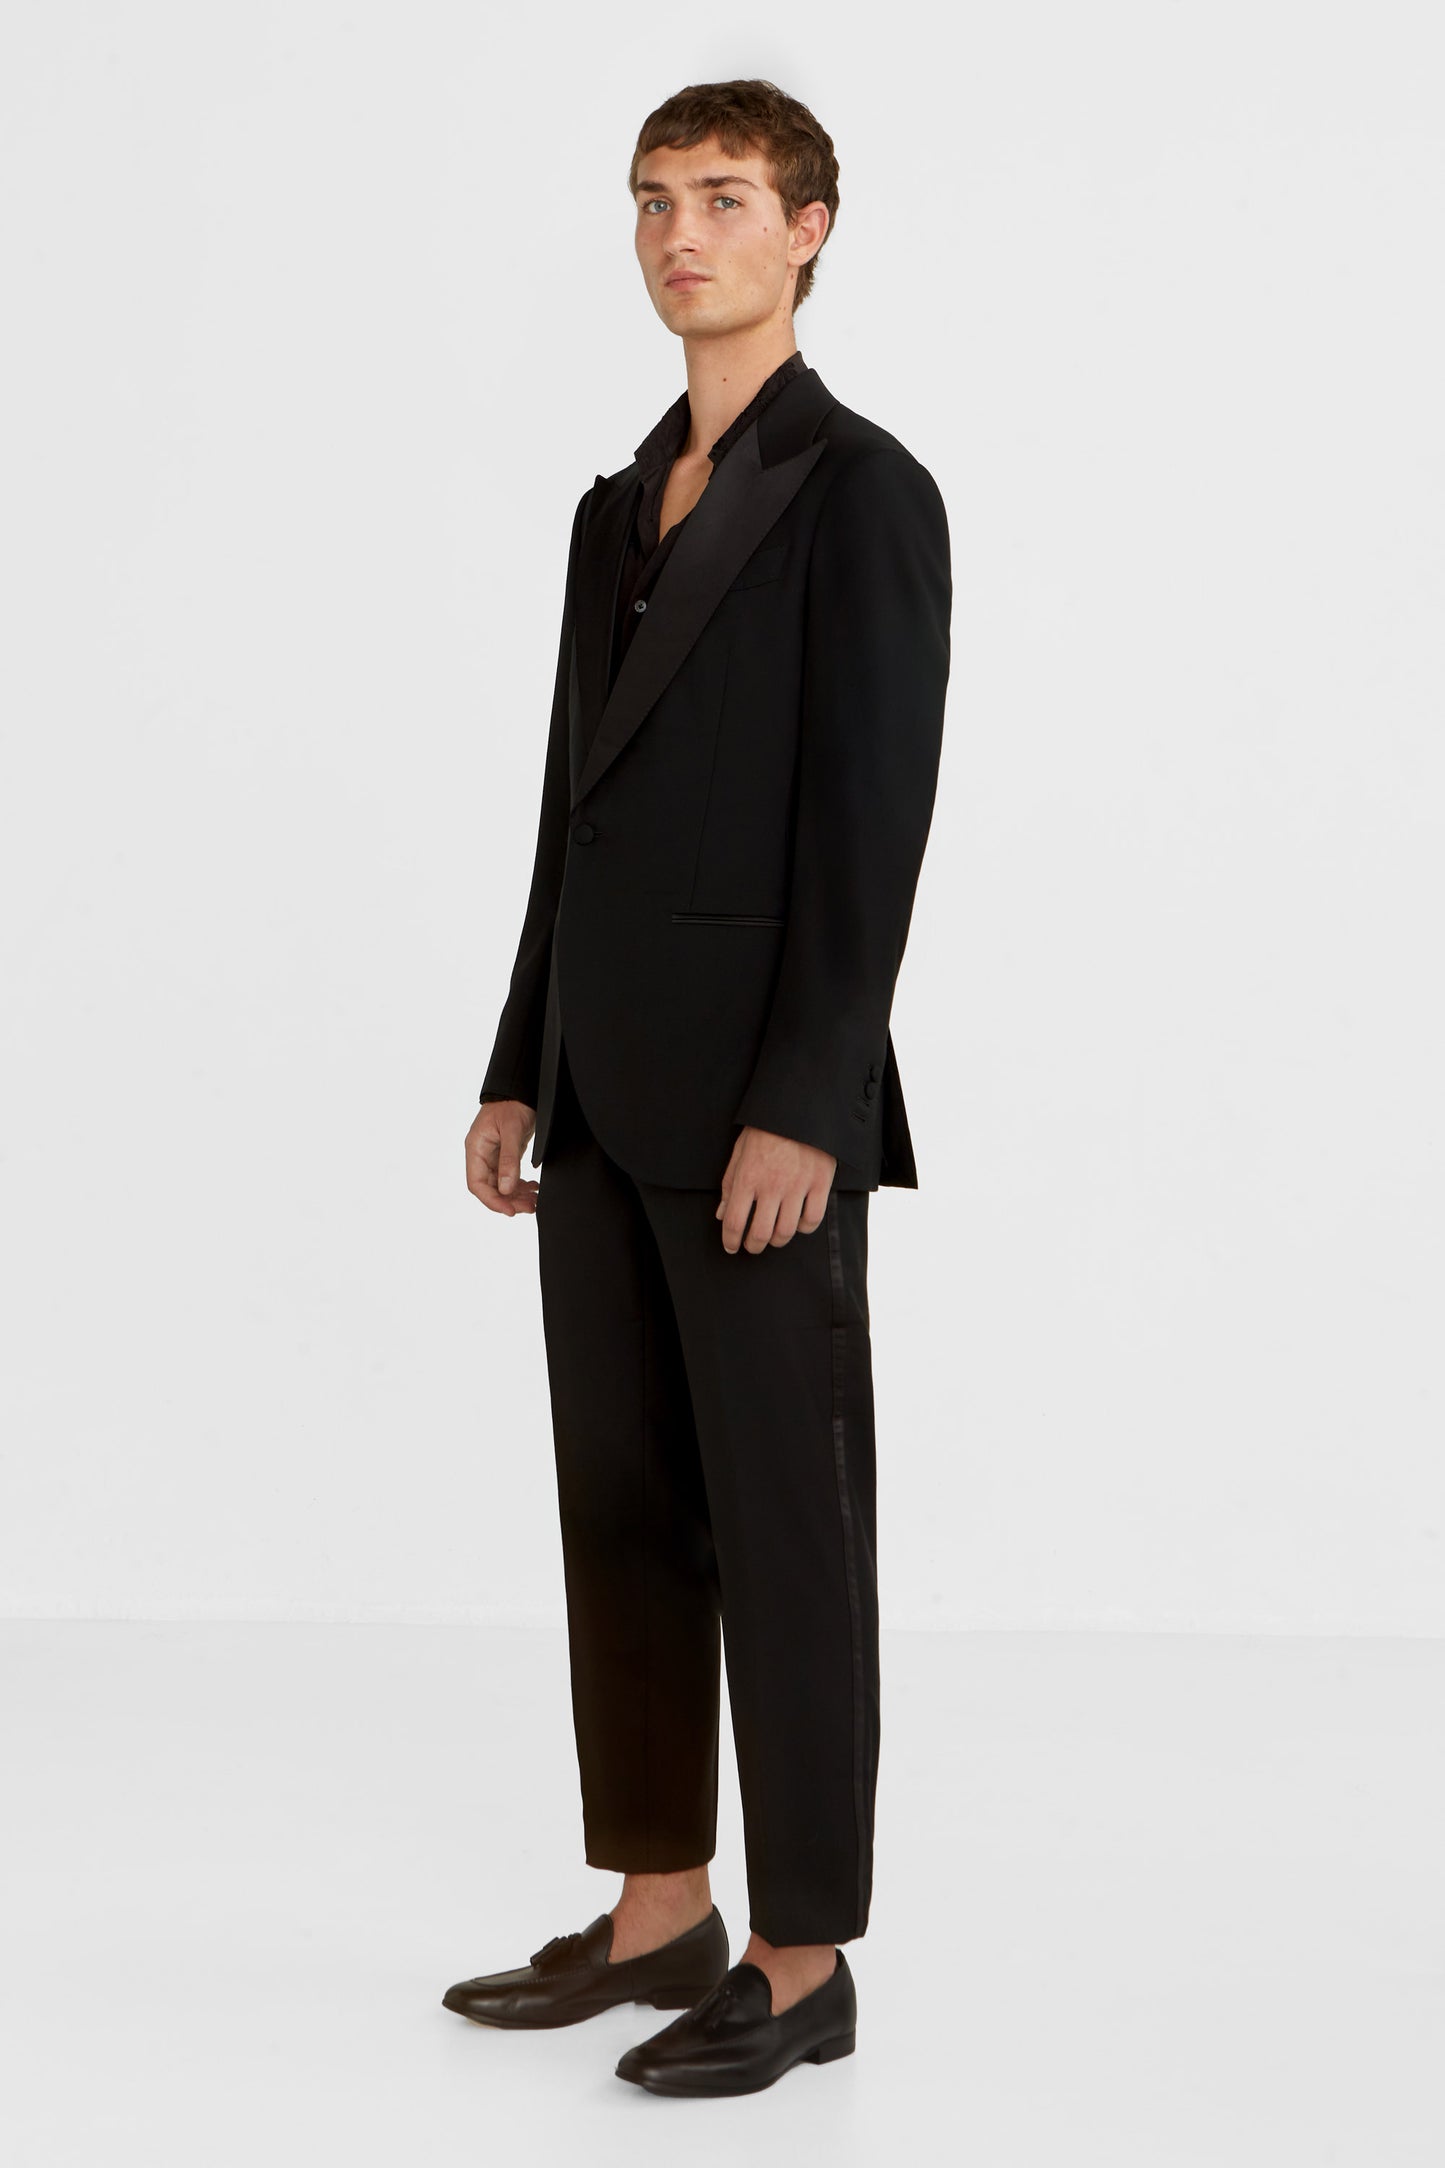 Evening black tuxedo suit , super 120 wool